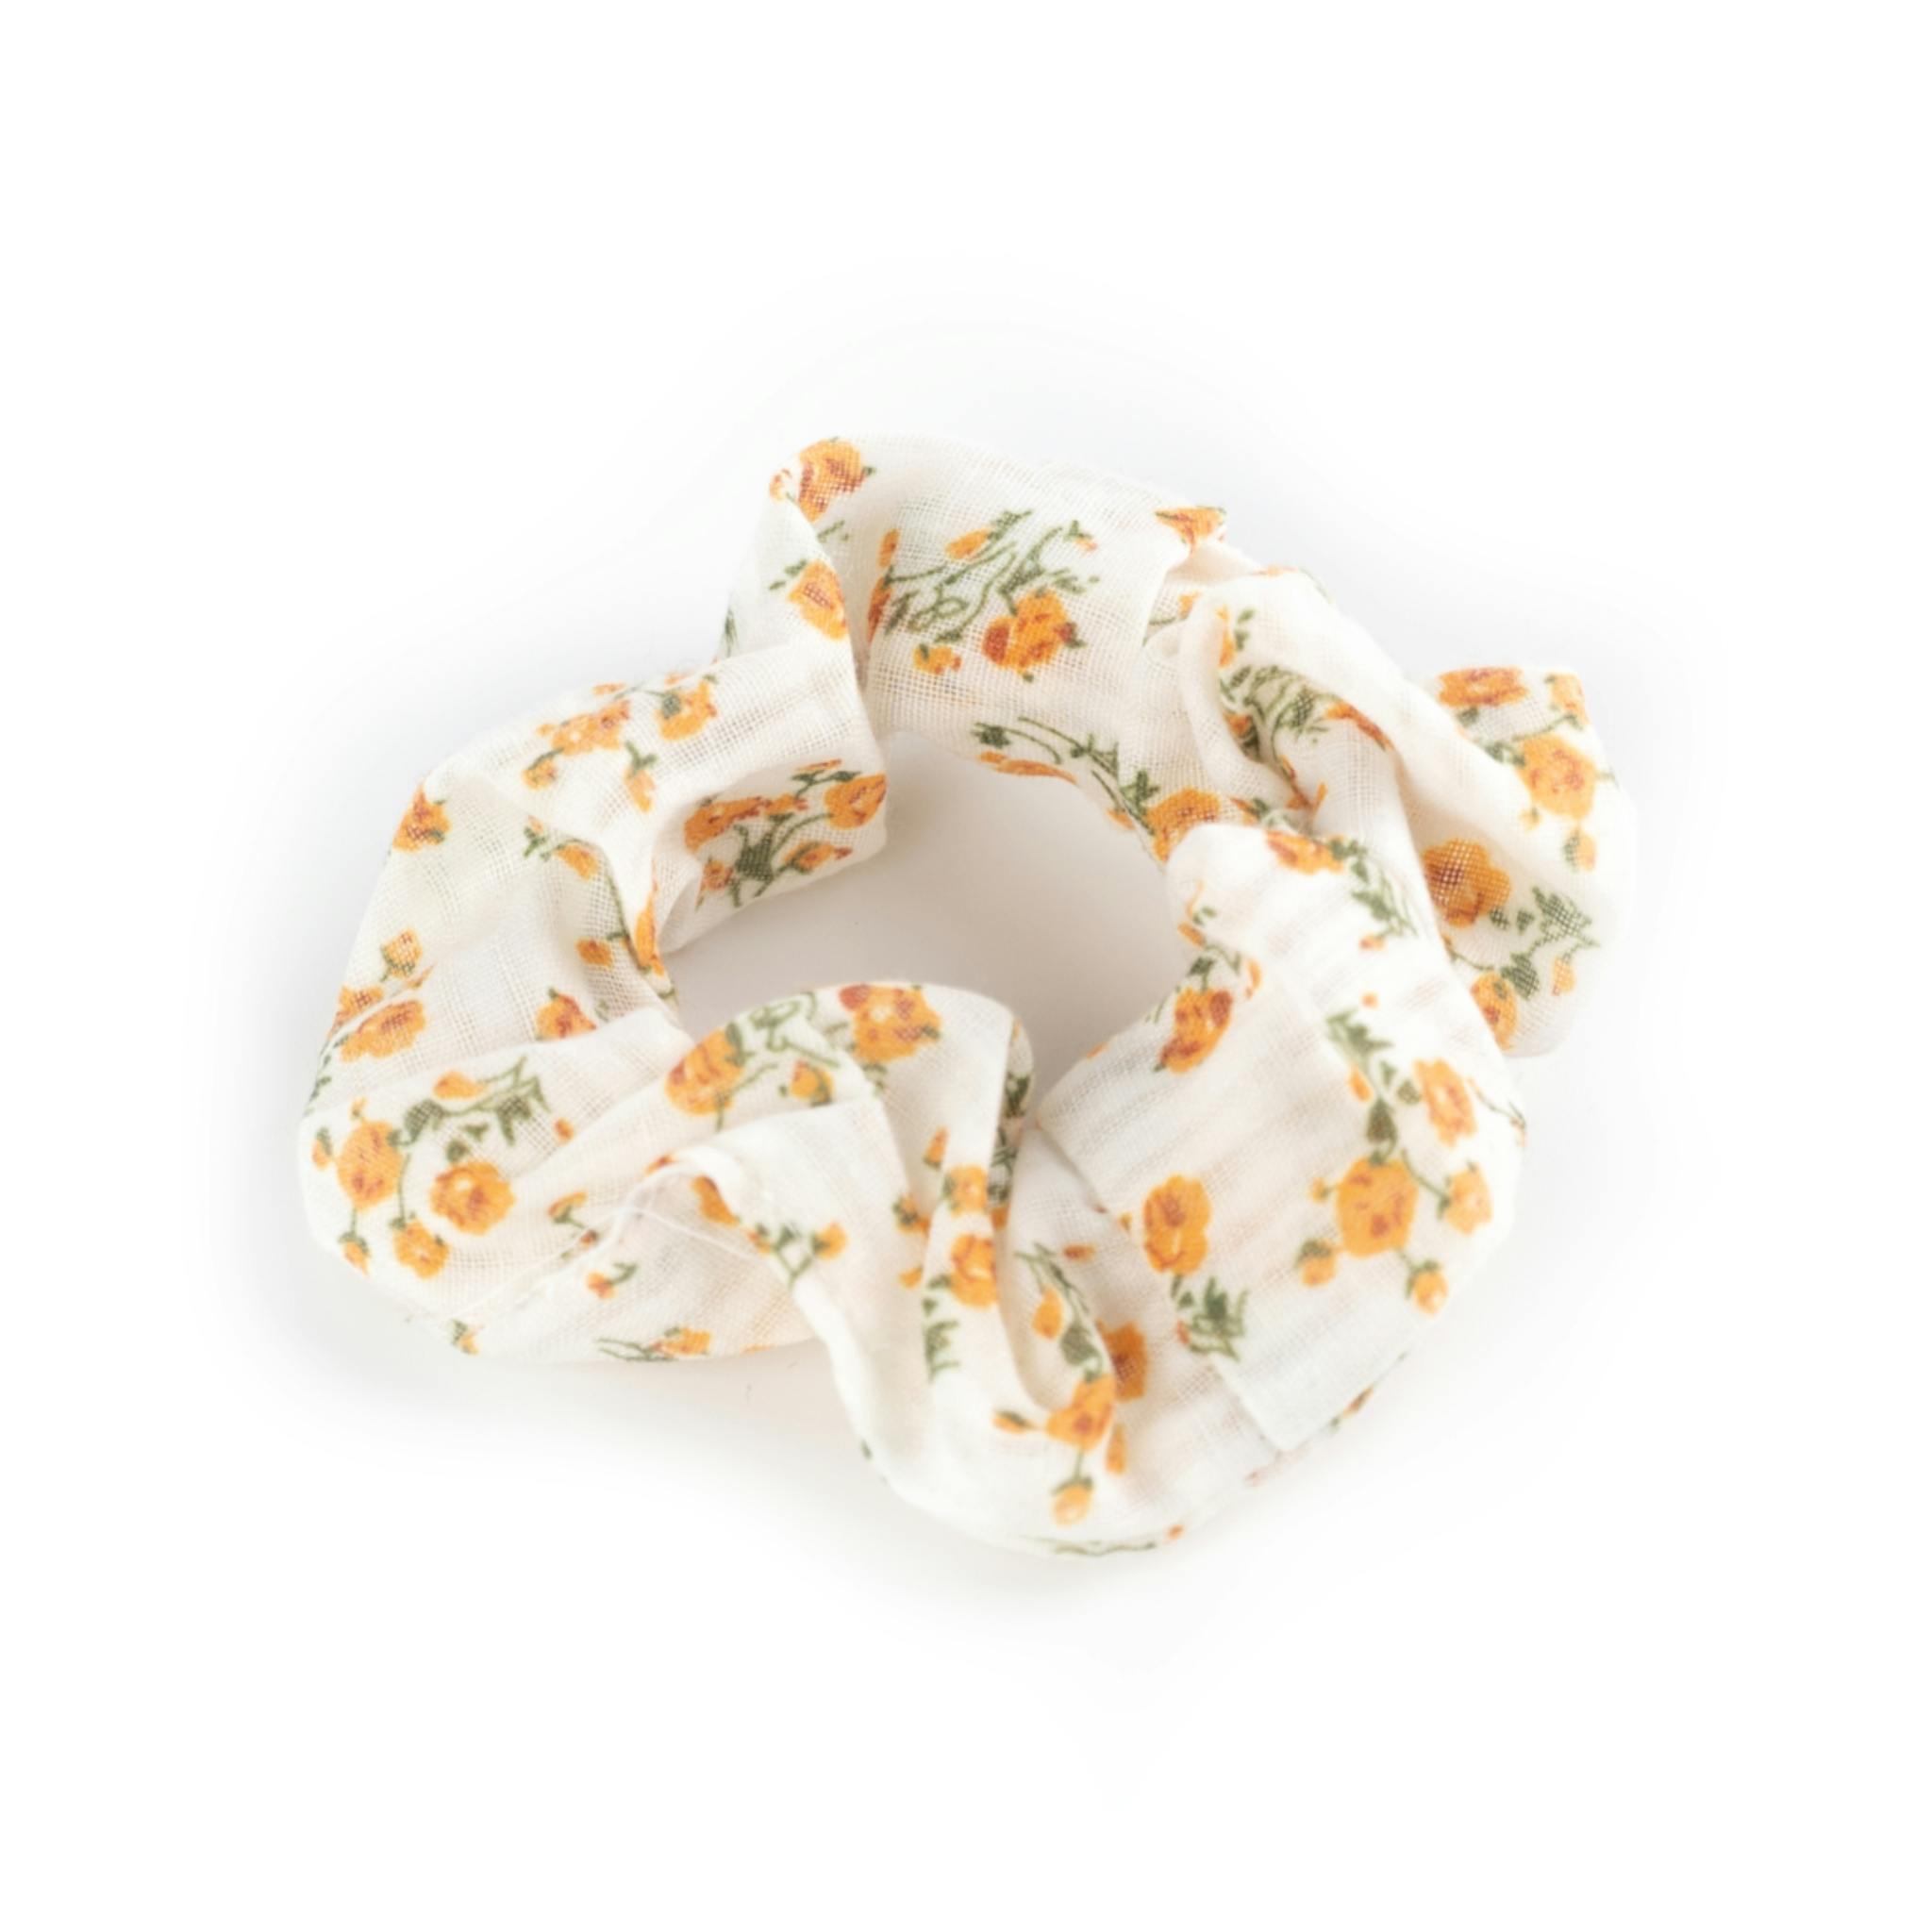 Scrunchie - vit med gula blommor